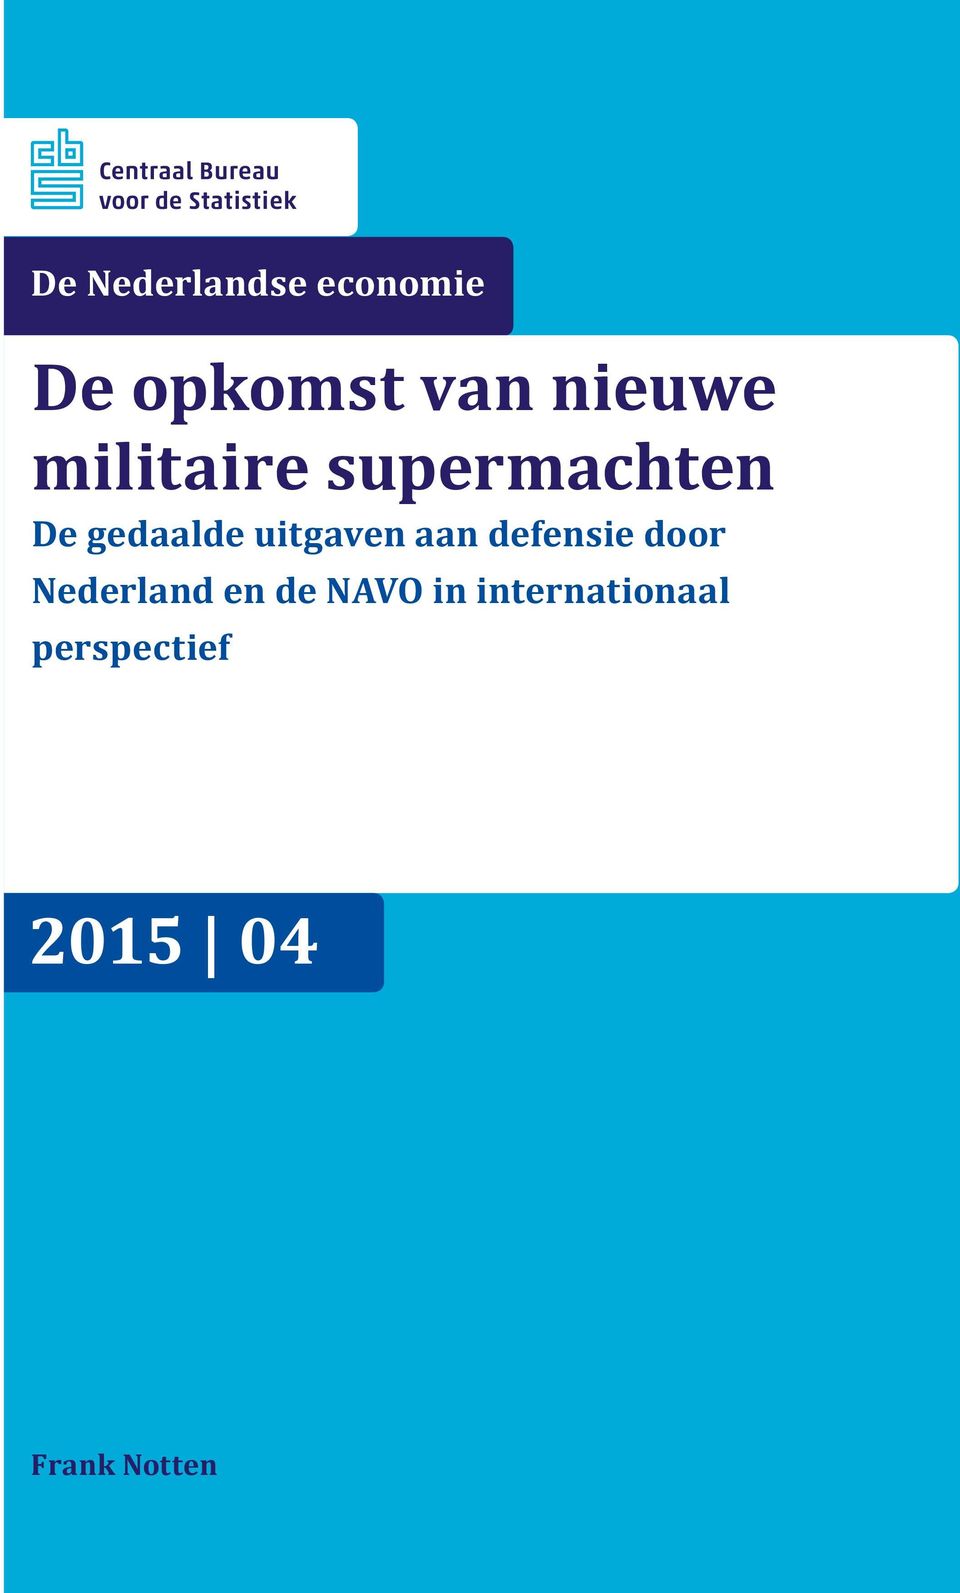 Nederland Werkloosheidsduren en de NAVO op in basis internationaal van de Enquête